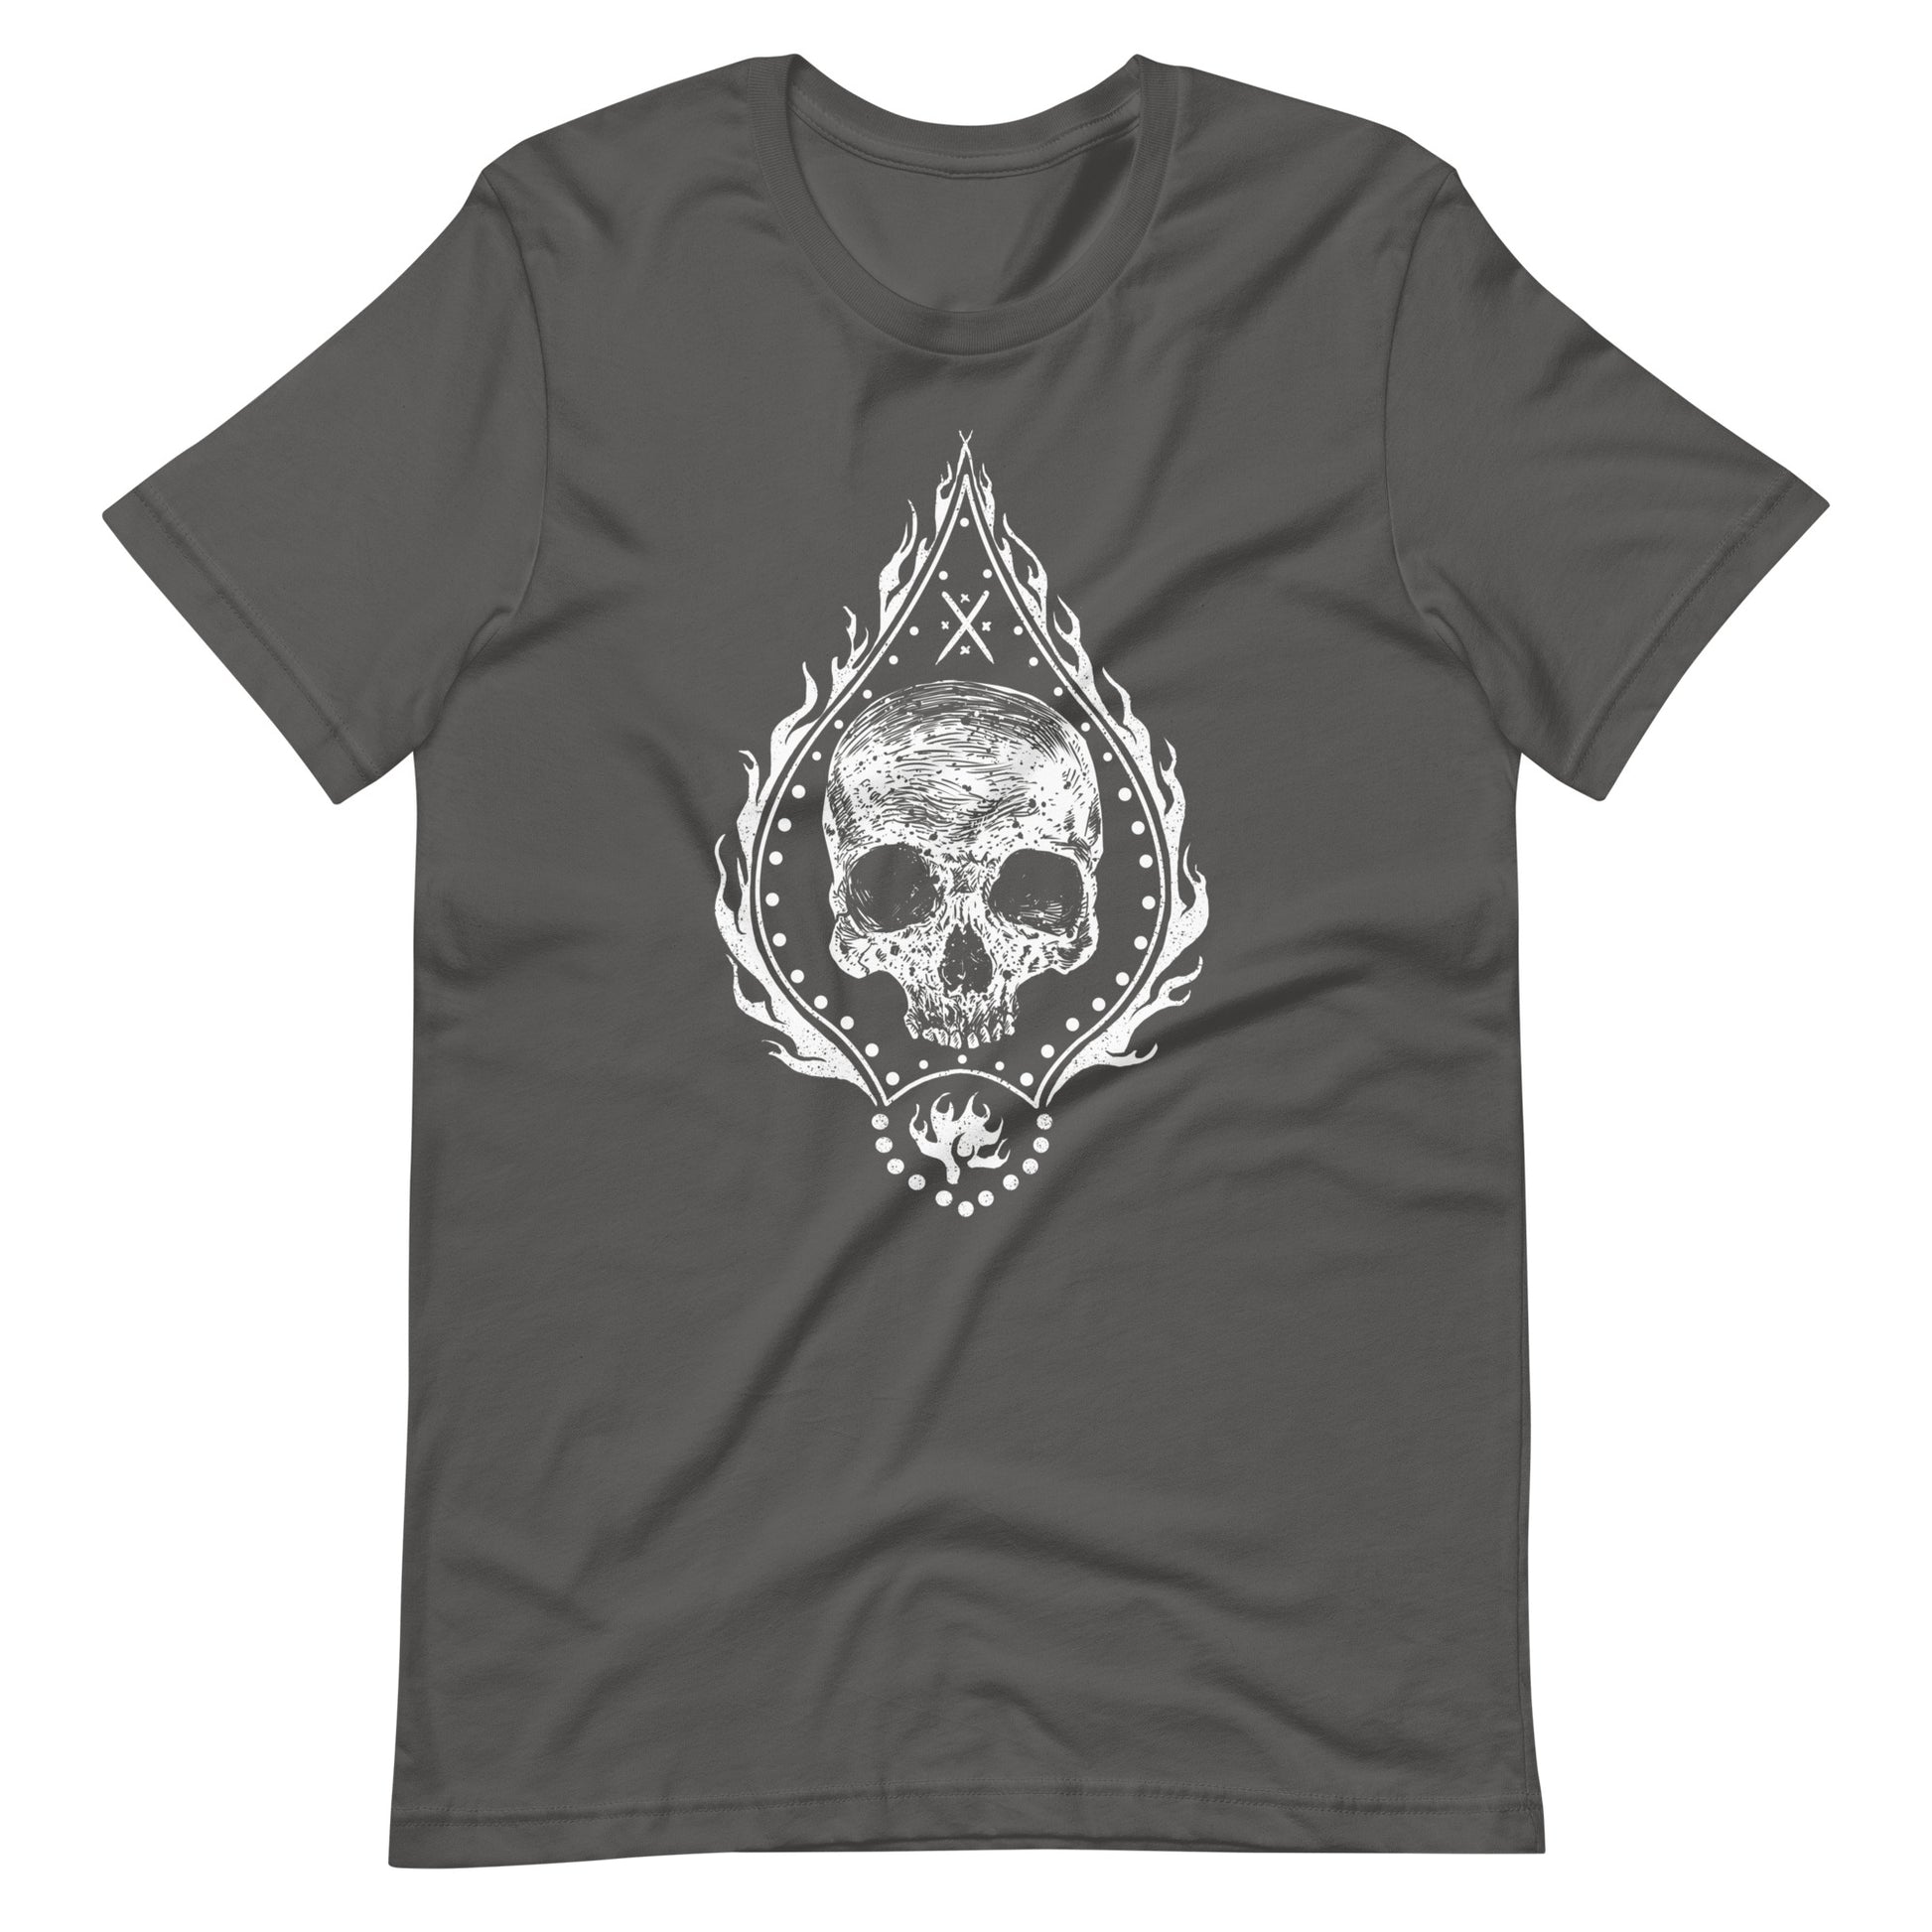 Fire Skull White - Men's t-shirt - Asphalt Front